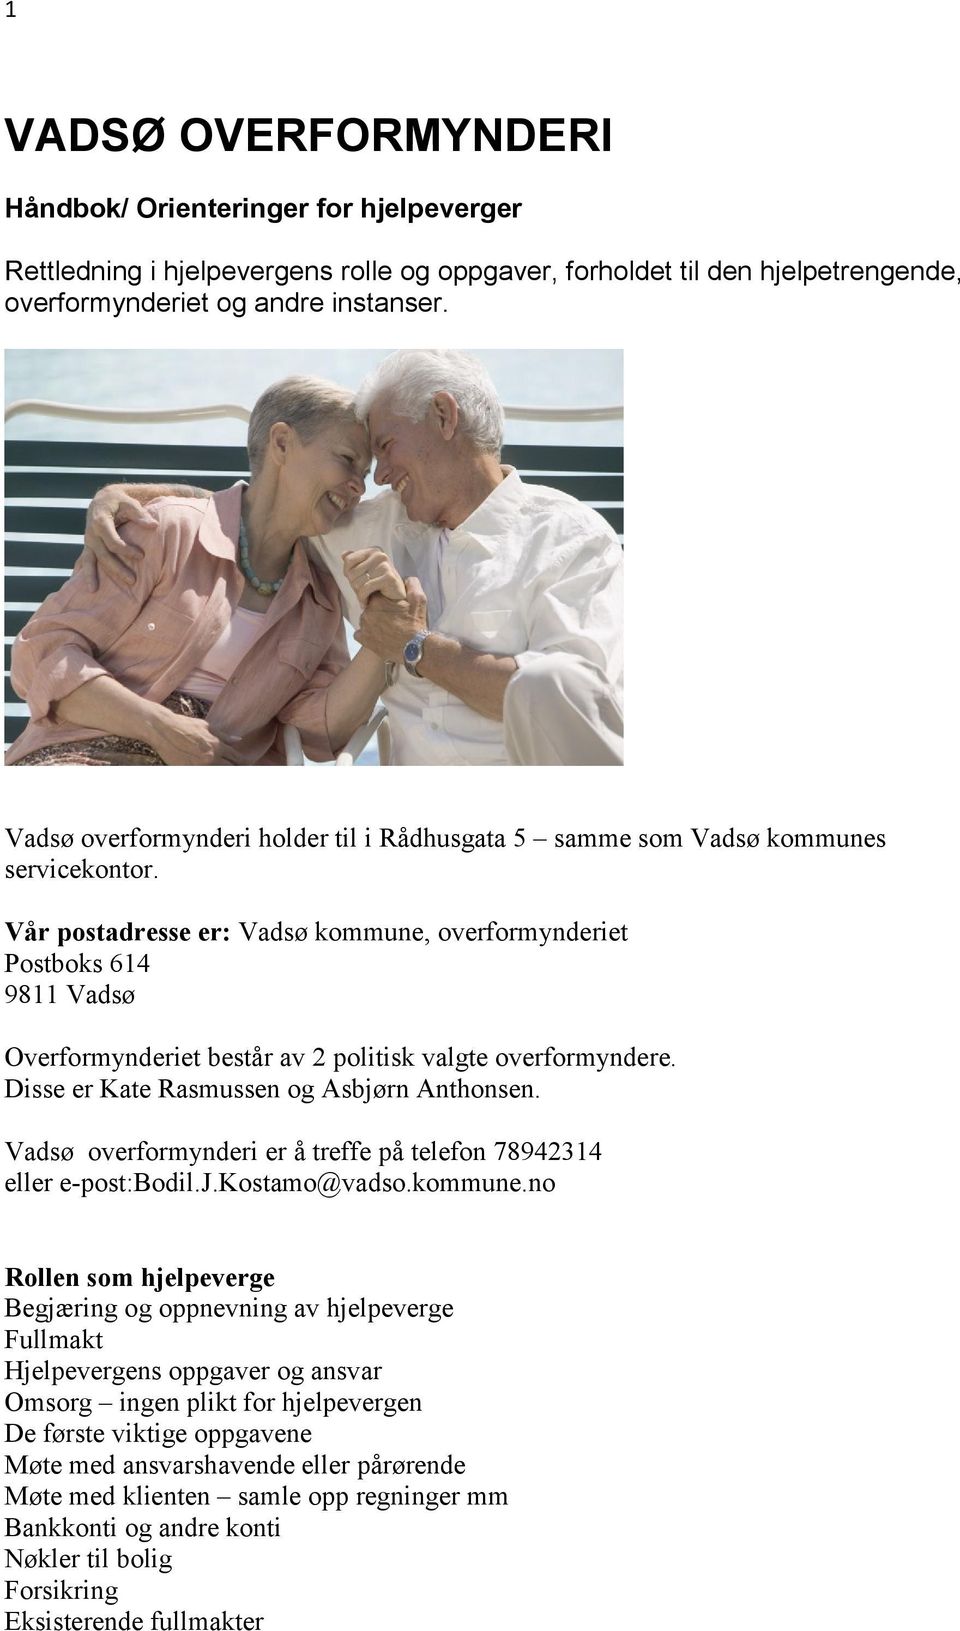 Vår postadresse er: Vadsø kommune, overformynderiet Postboks 614 9811 Vadsø Overformynderiet består av 2 politisk valgte overformyndere. Disse er Kate Rasmussen og Asbjørn Anthonsen.